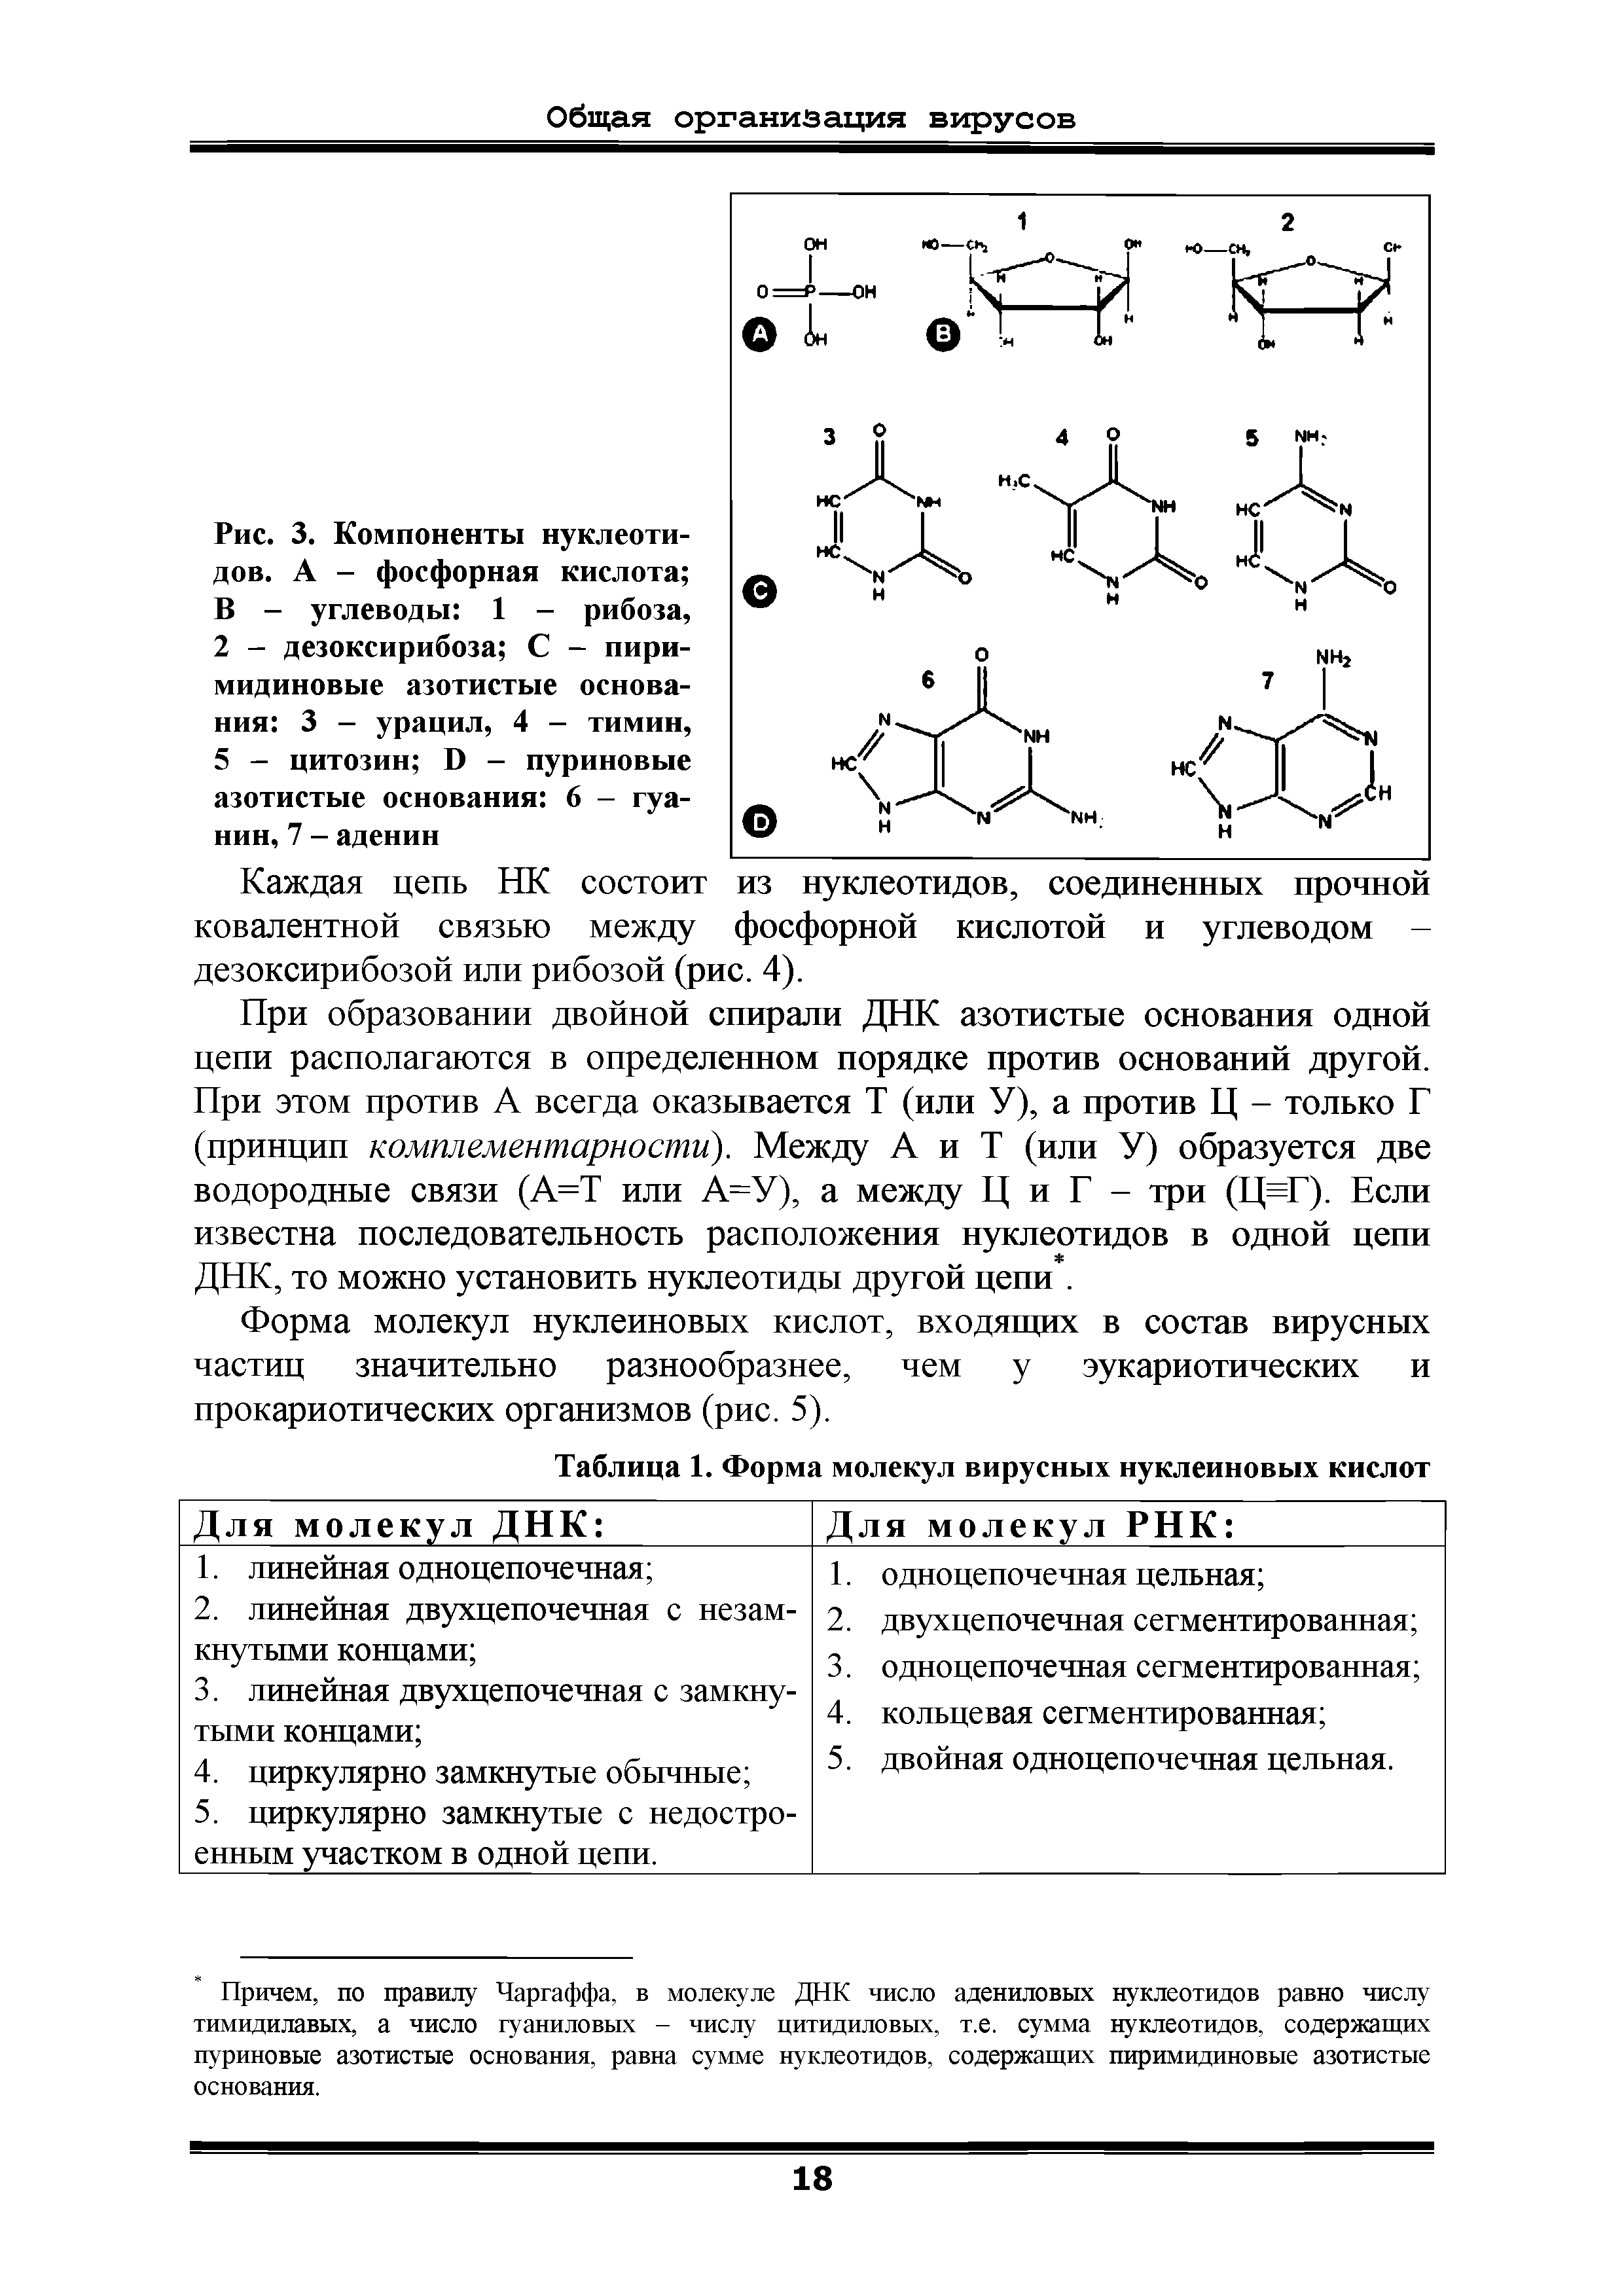 Рис. 3. Компоненты нуклеотидов. А - фосфорная кислота В - углеводы 1 - рибоза, 2 - дезоксирибоза С - пиримидиновые азотистые основания 3 - урацил, 4 - тимин, 5 - цитозин Б - пуриновые азотистые основания 6 - гуанин, 7 - аденин...